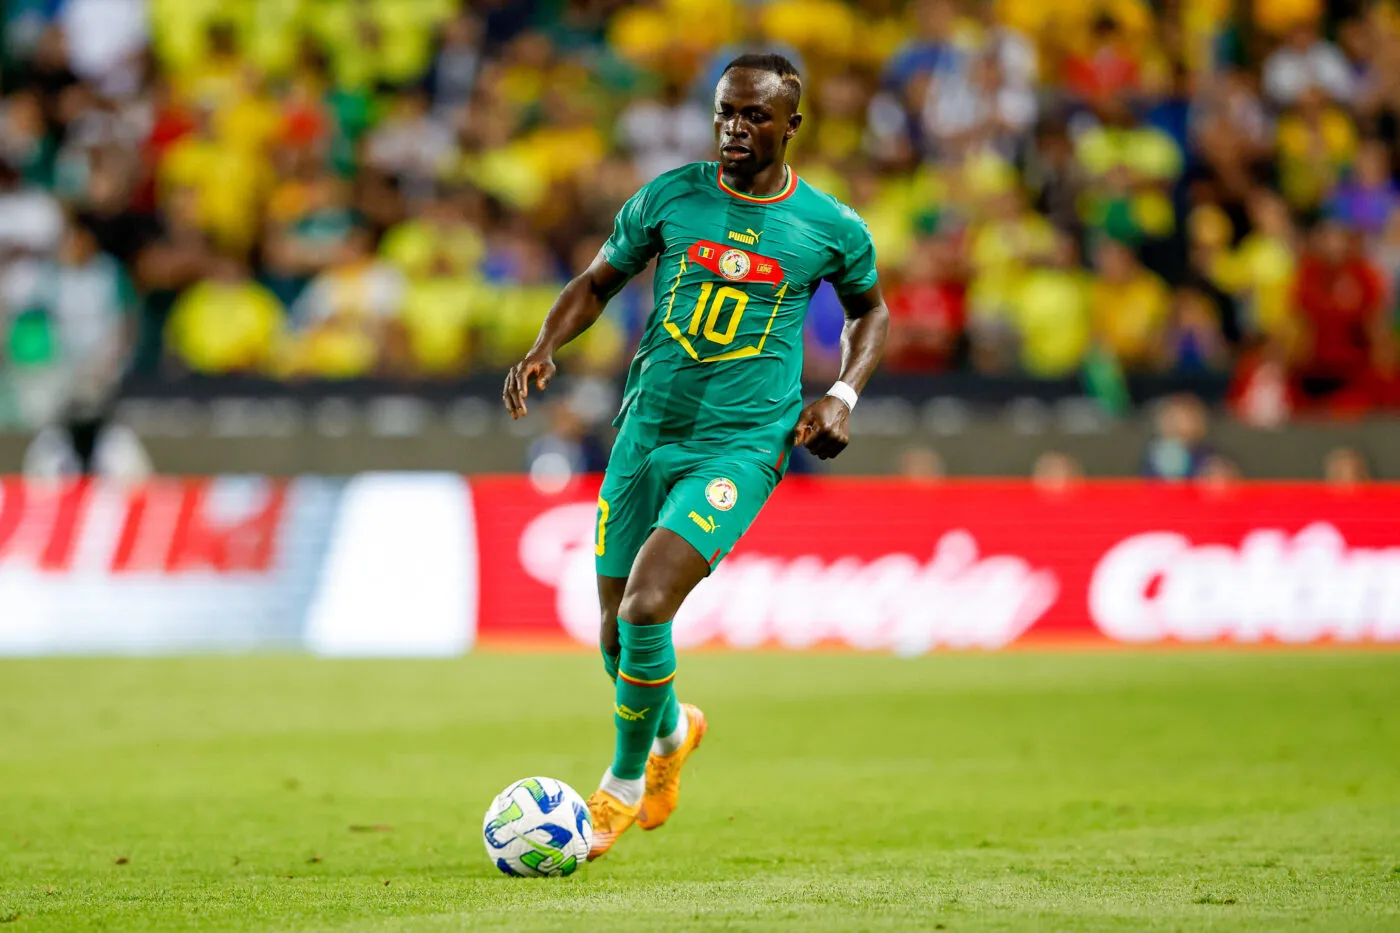 Le Sénégal attaque fort les qualifications pour la Coupe du monde